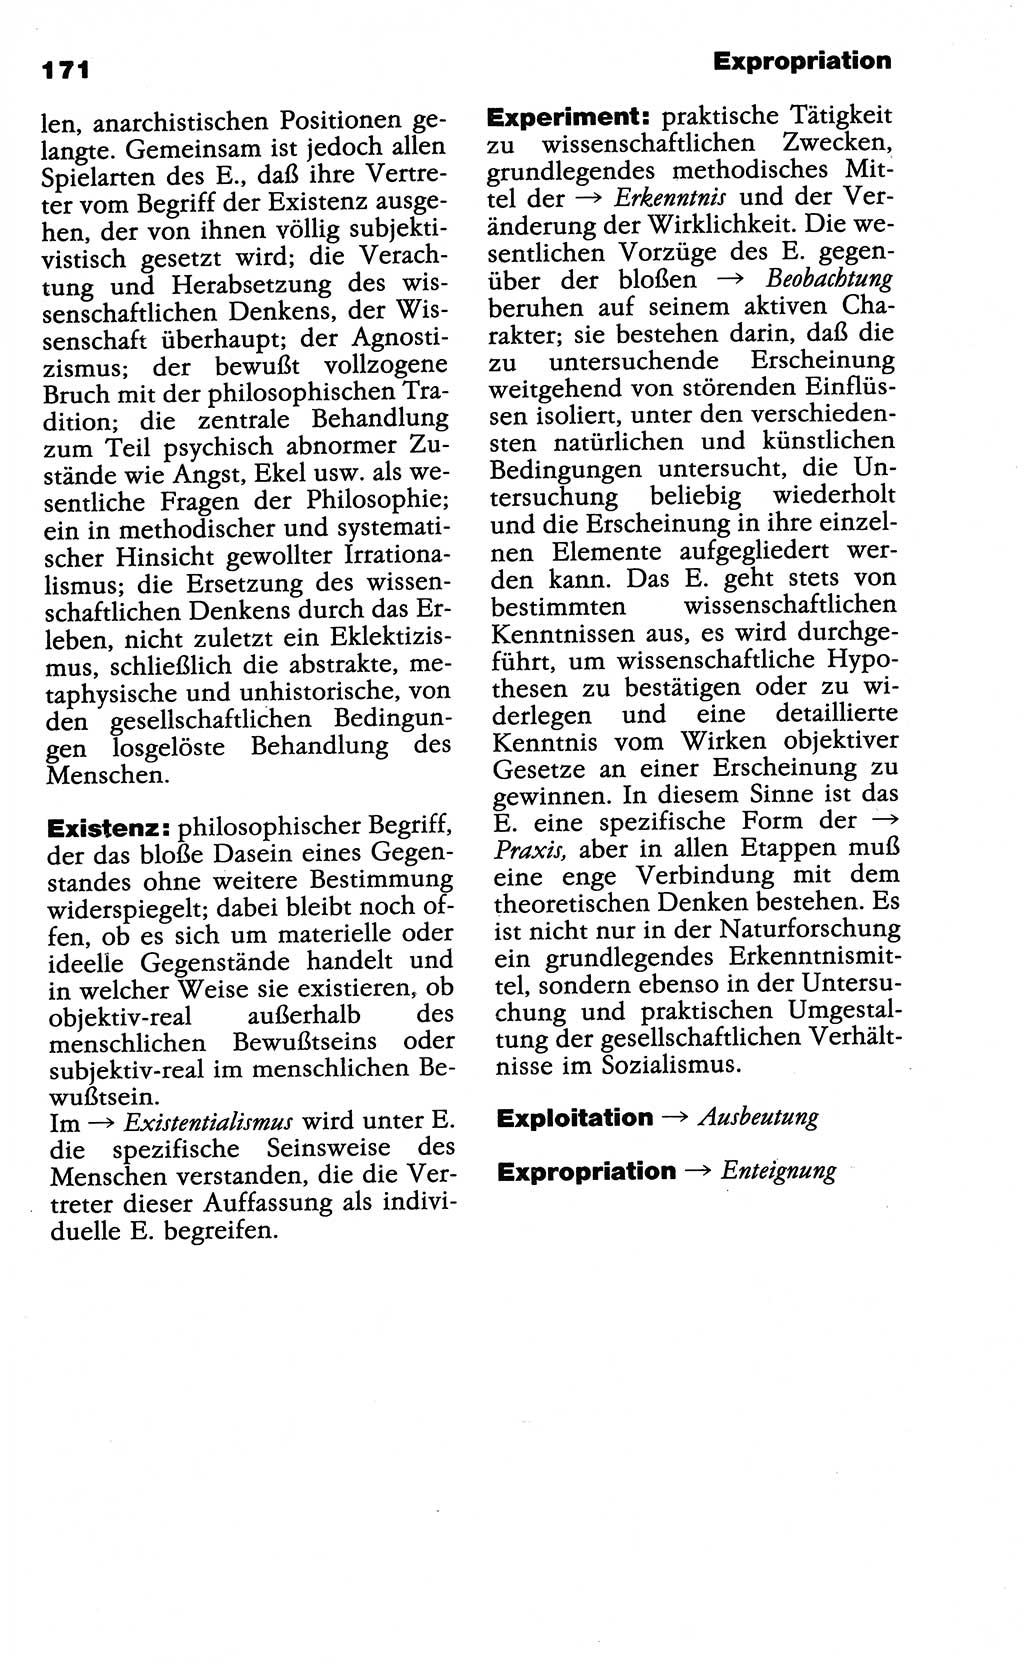 Wörterbuch der marxistisch-leninistischen Philosophie [Deutsche Demokratische Republik (DDR)] 1985, Seite 171 (Wb. ML Phil. DDR 1985, S. 171)